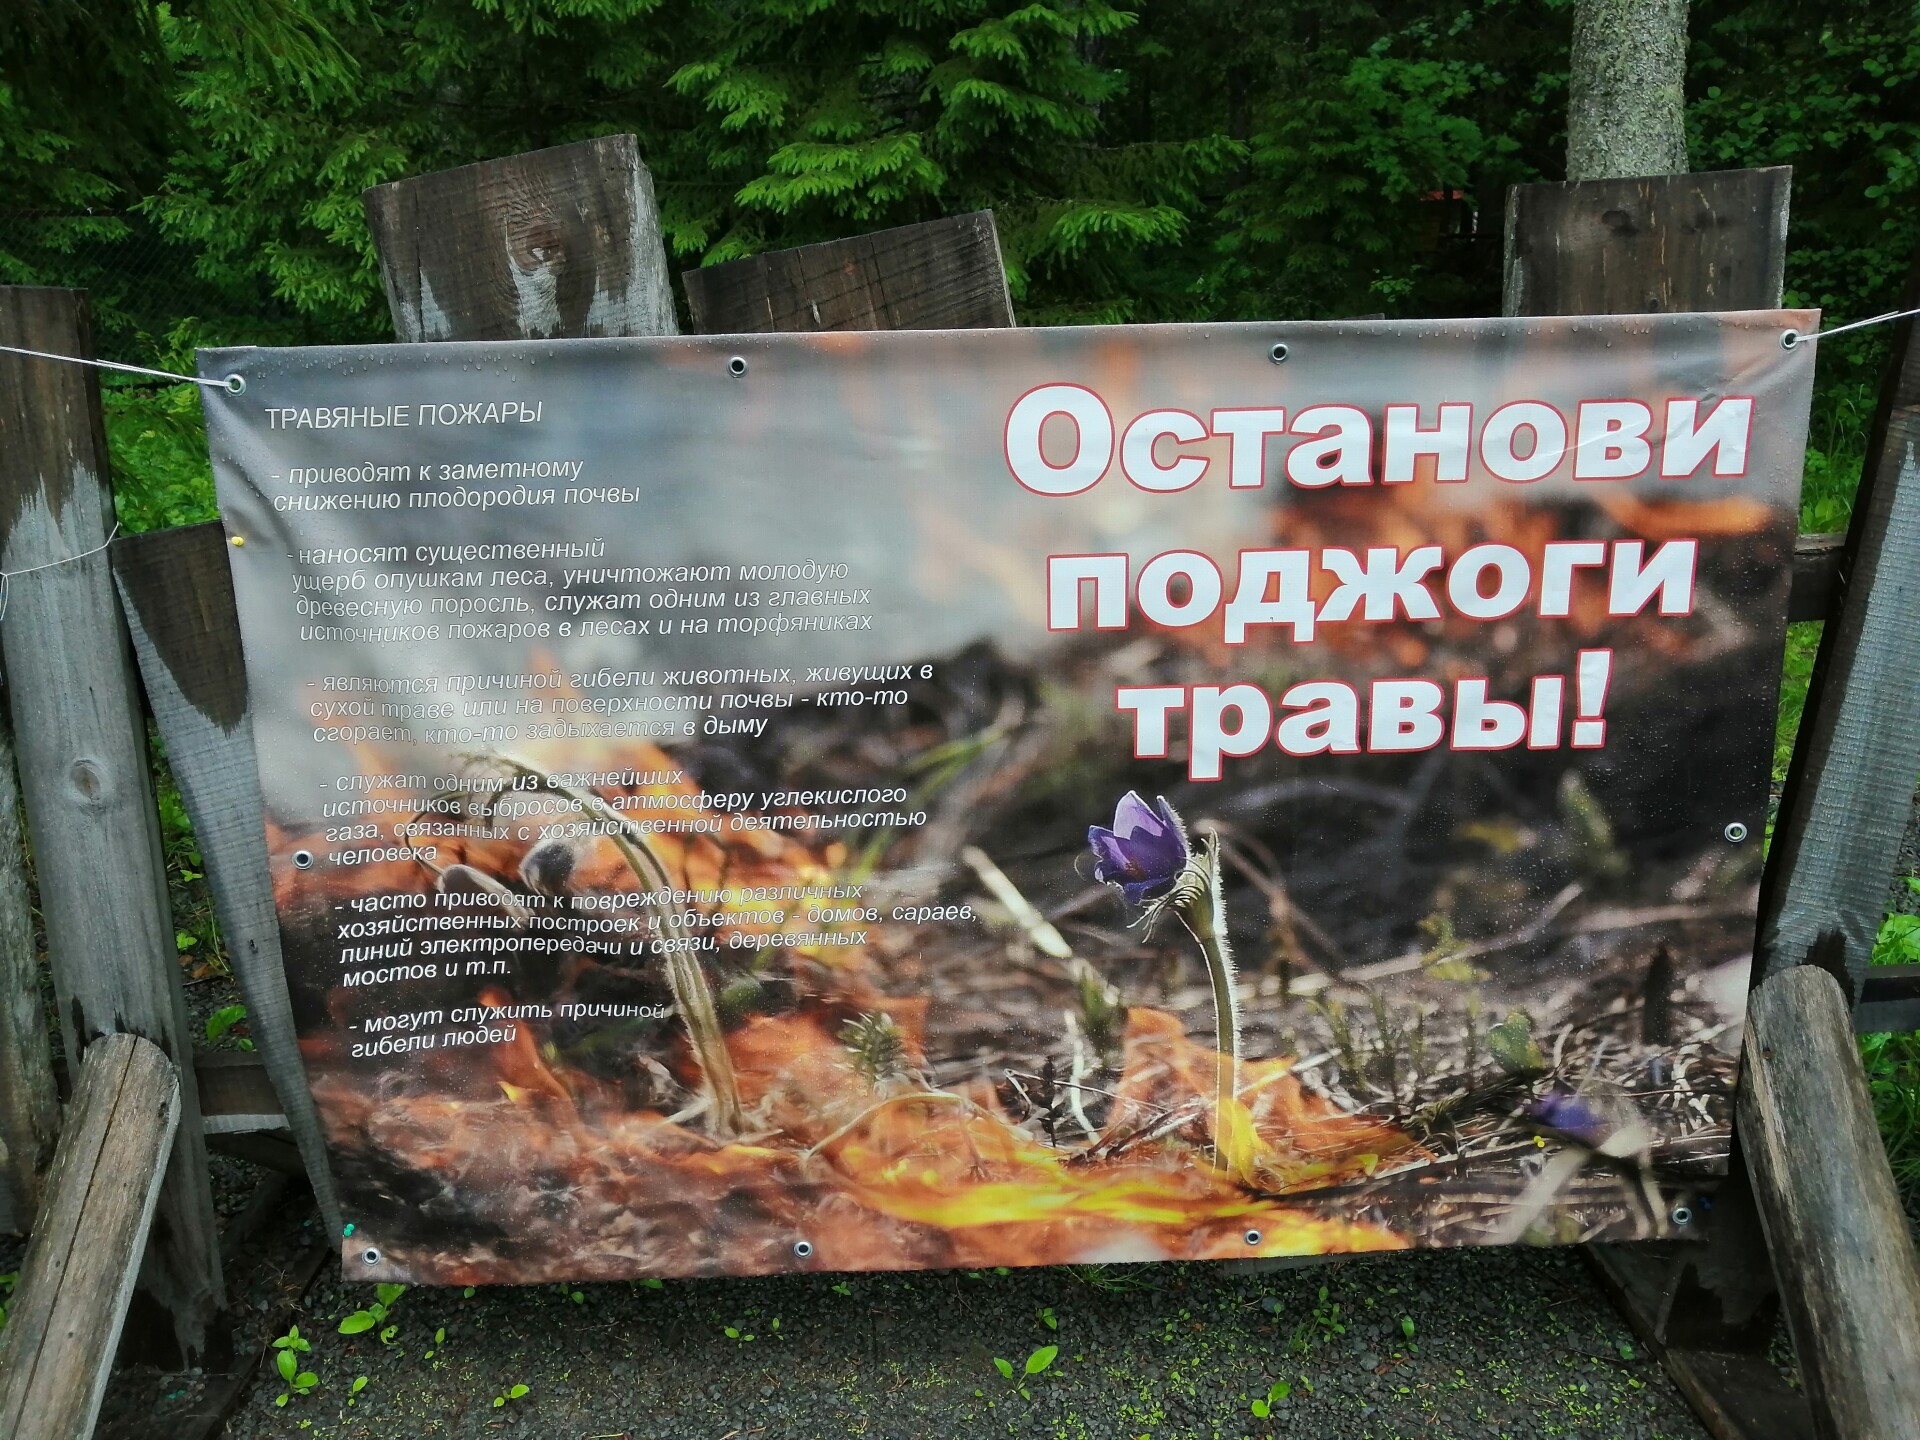 Наивысший класс пожарной опасности прогнозируется в Псковской области